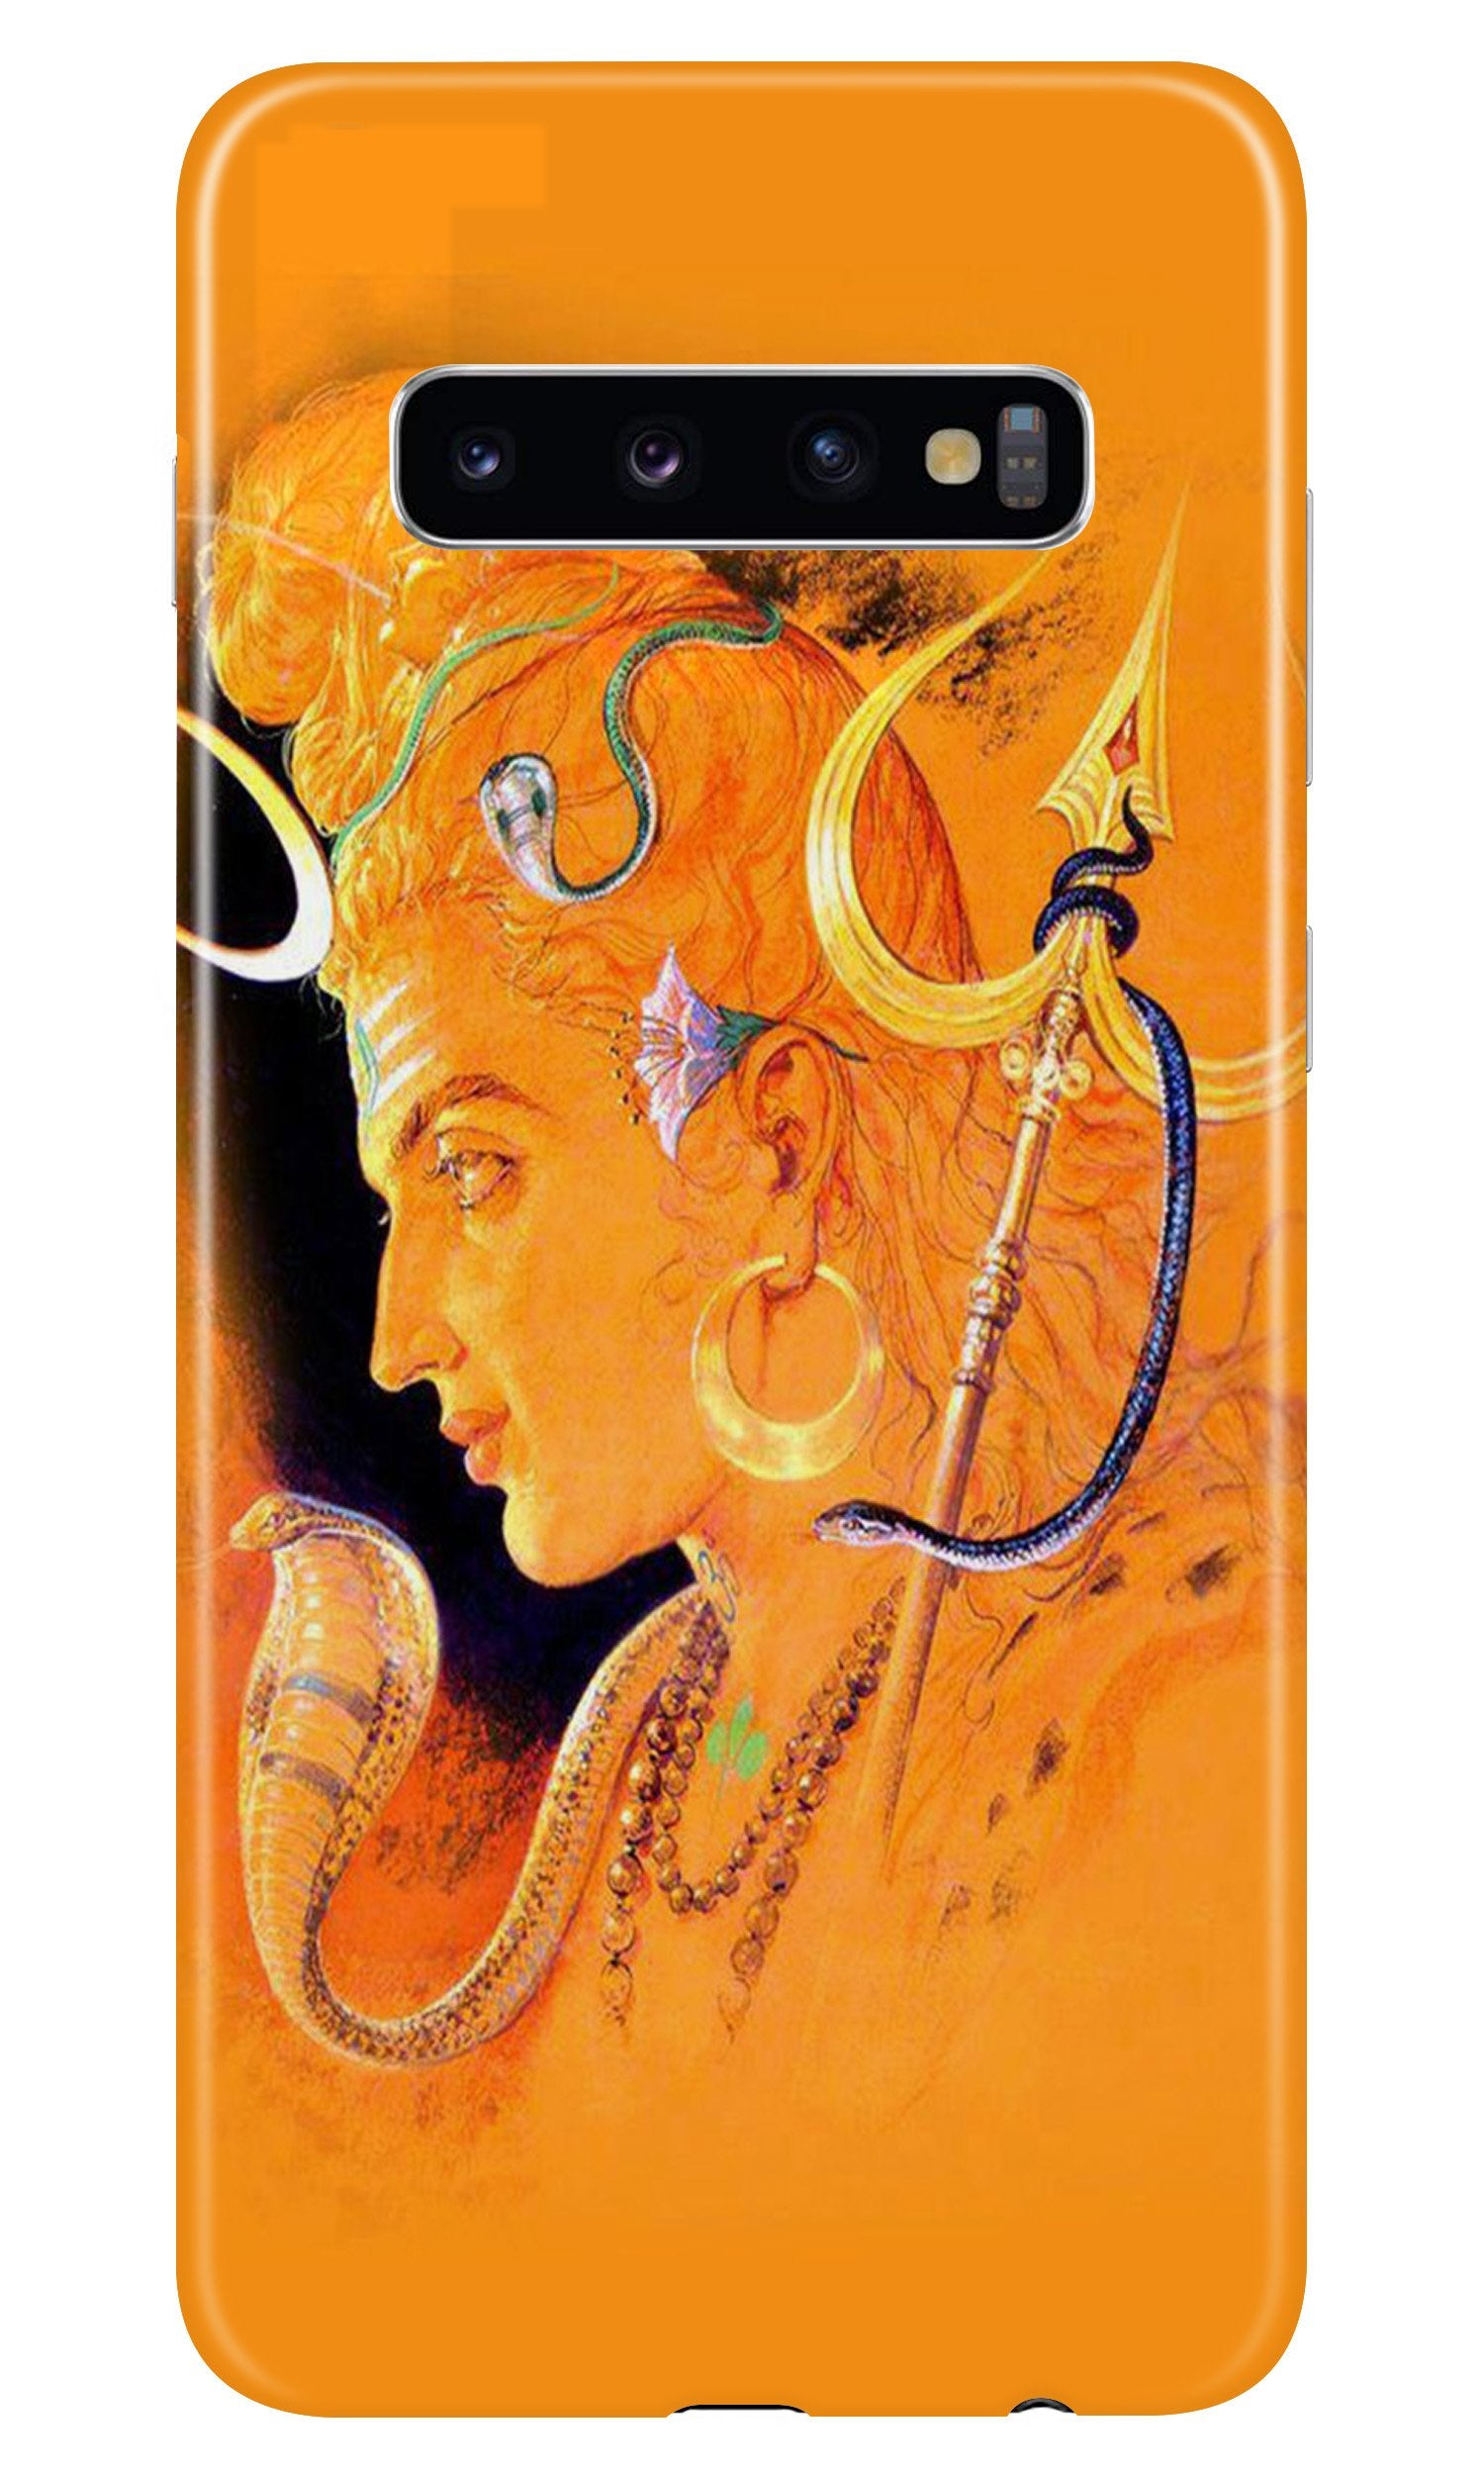 Lord Shiva Case for Samsung Galaxy S10 Plus (Design No. 293)